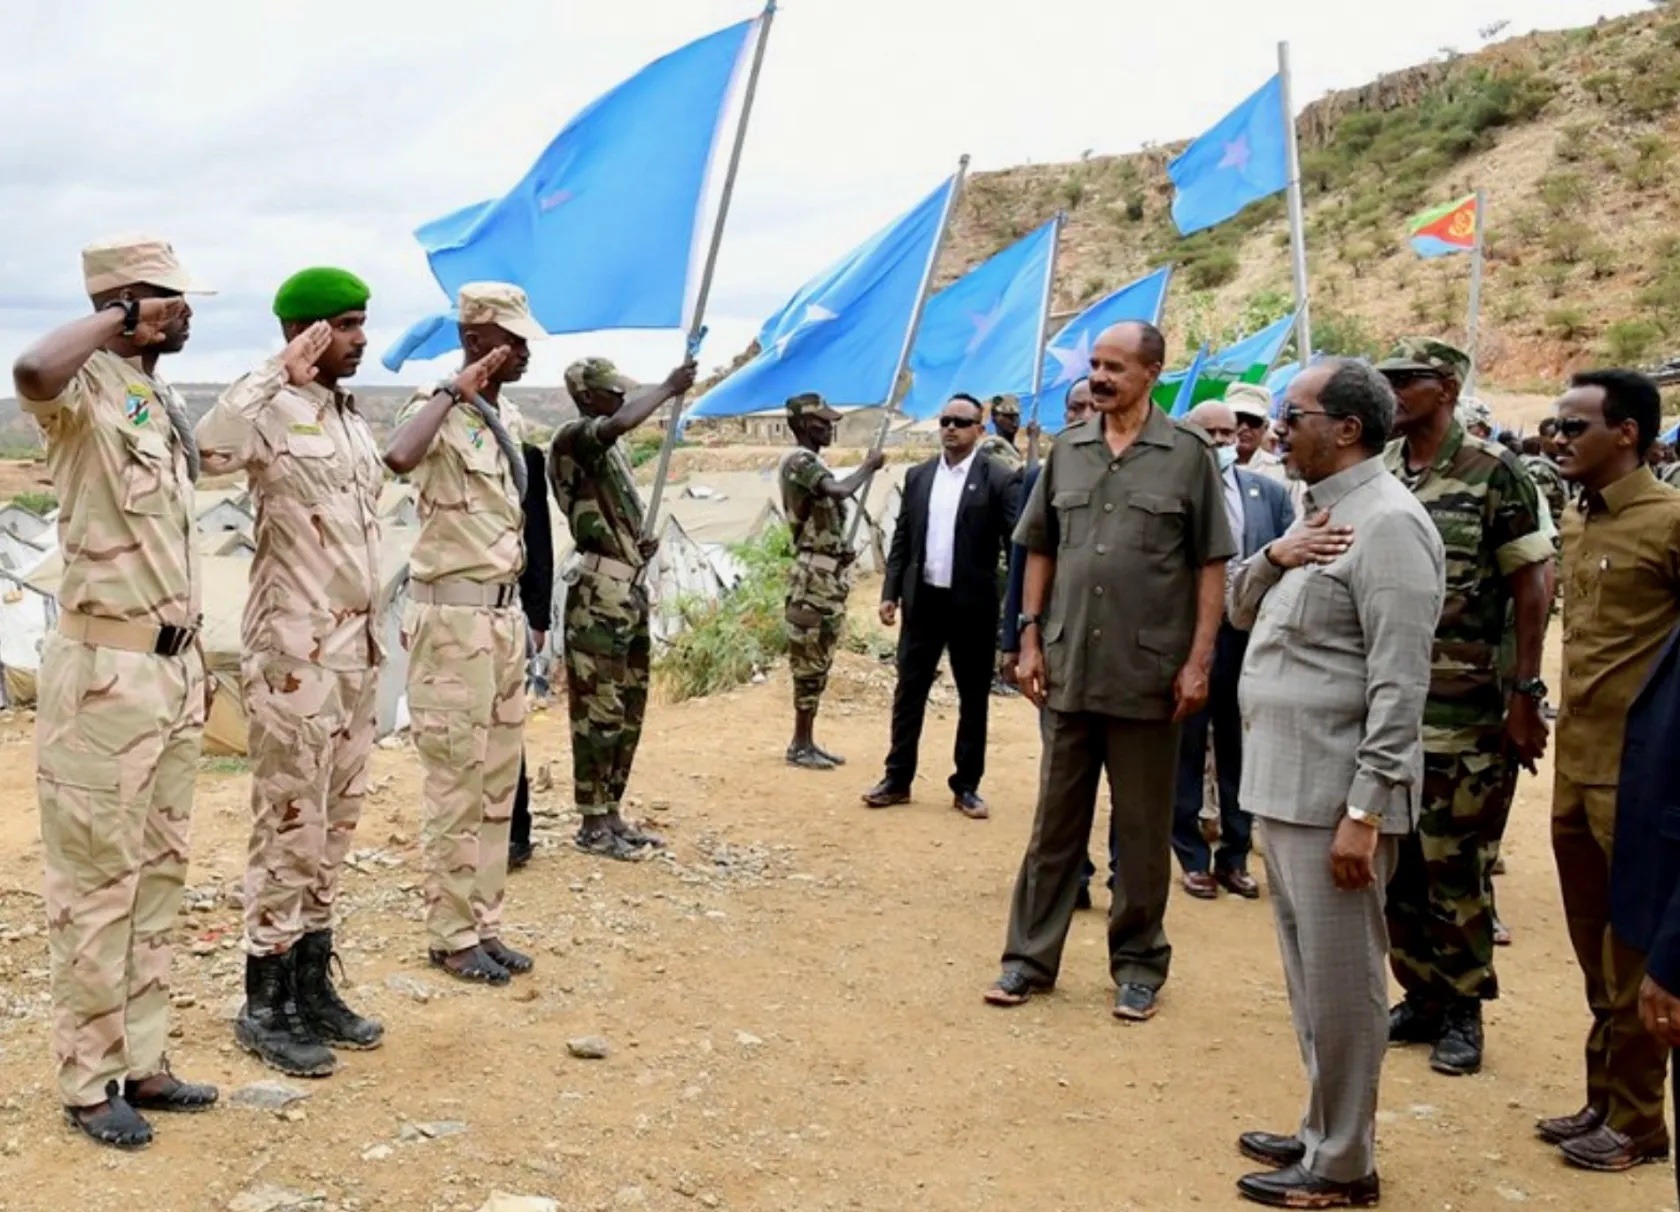 Il Presidente somalo Hassan Sheikh Mahmoud in visita alle proprie truppe in Eritrea, alla presenza del Presidente eritreo Isaias Afwerki.